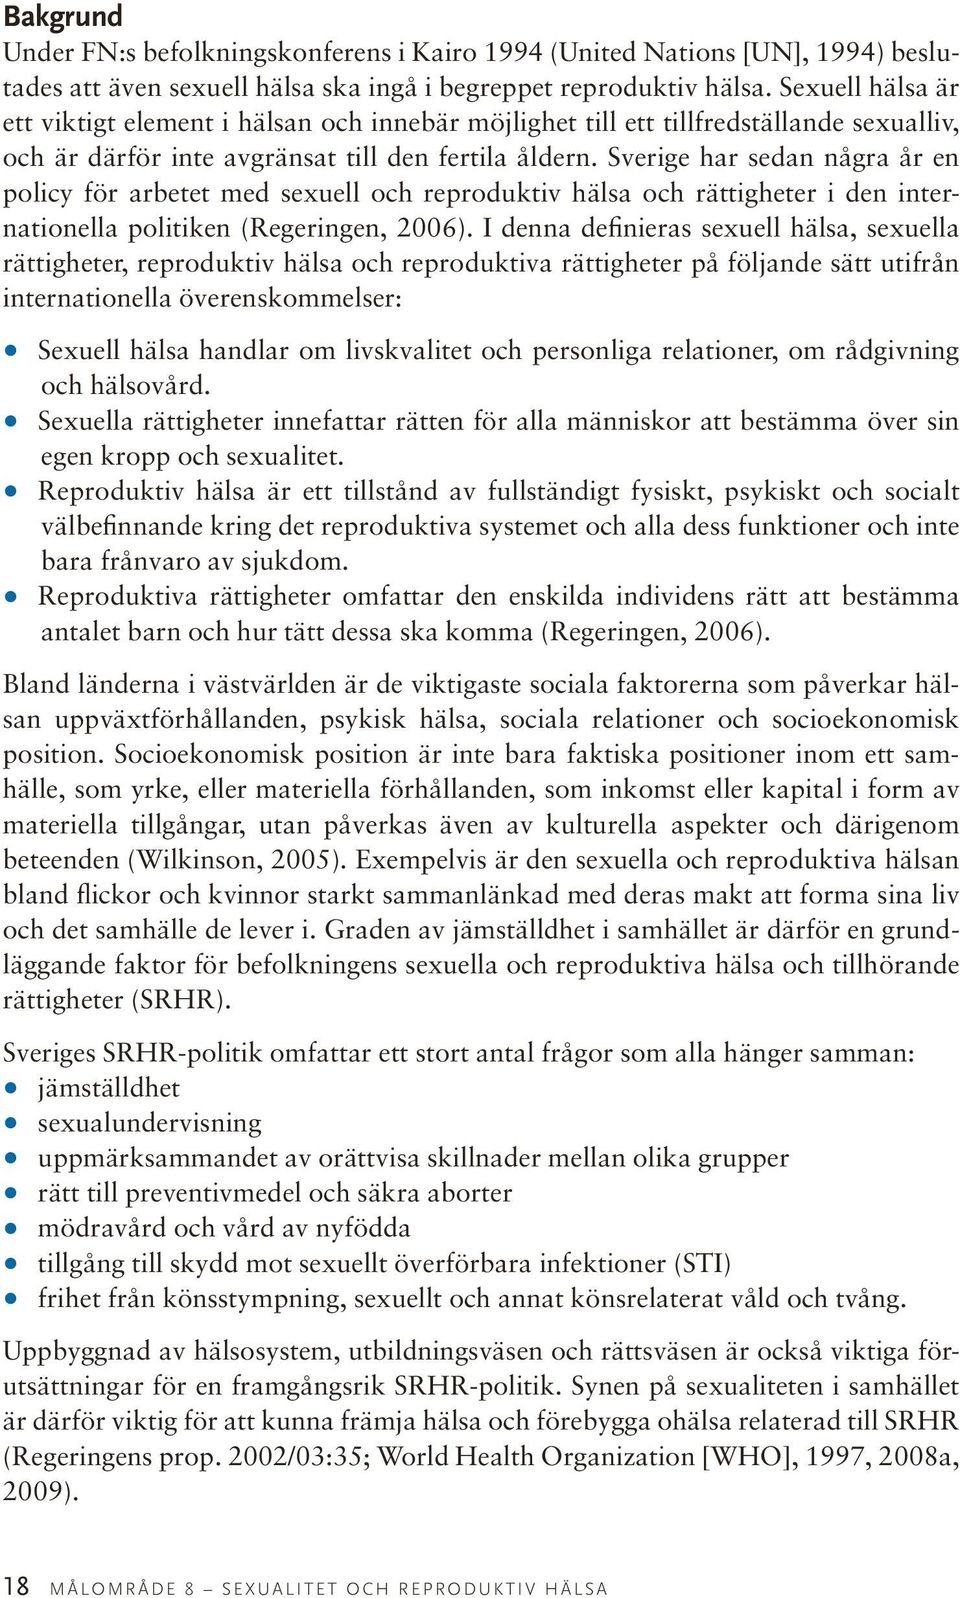 Sverige har sedan några år en policy för arbetet med sexuell och reproduktiv hälsa och rättigheter i den internationella politiken (Regeringen, 2006).